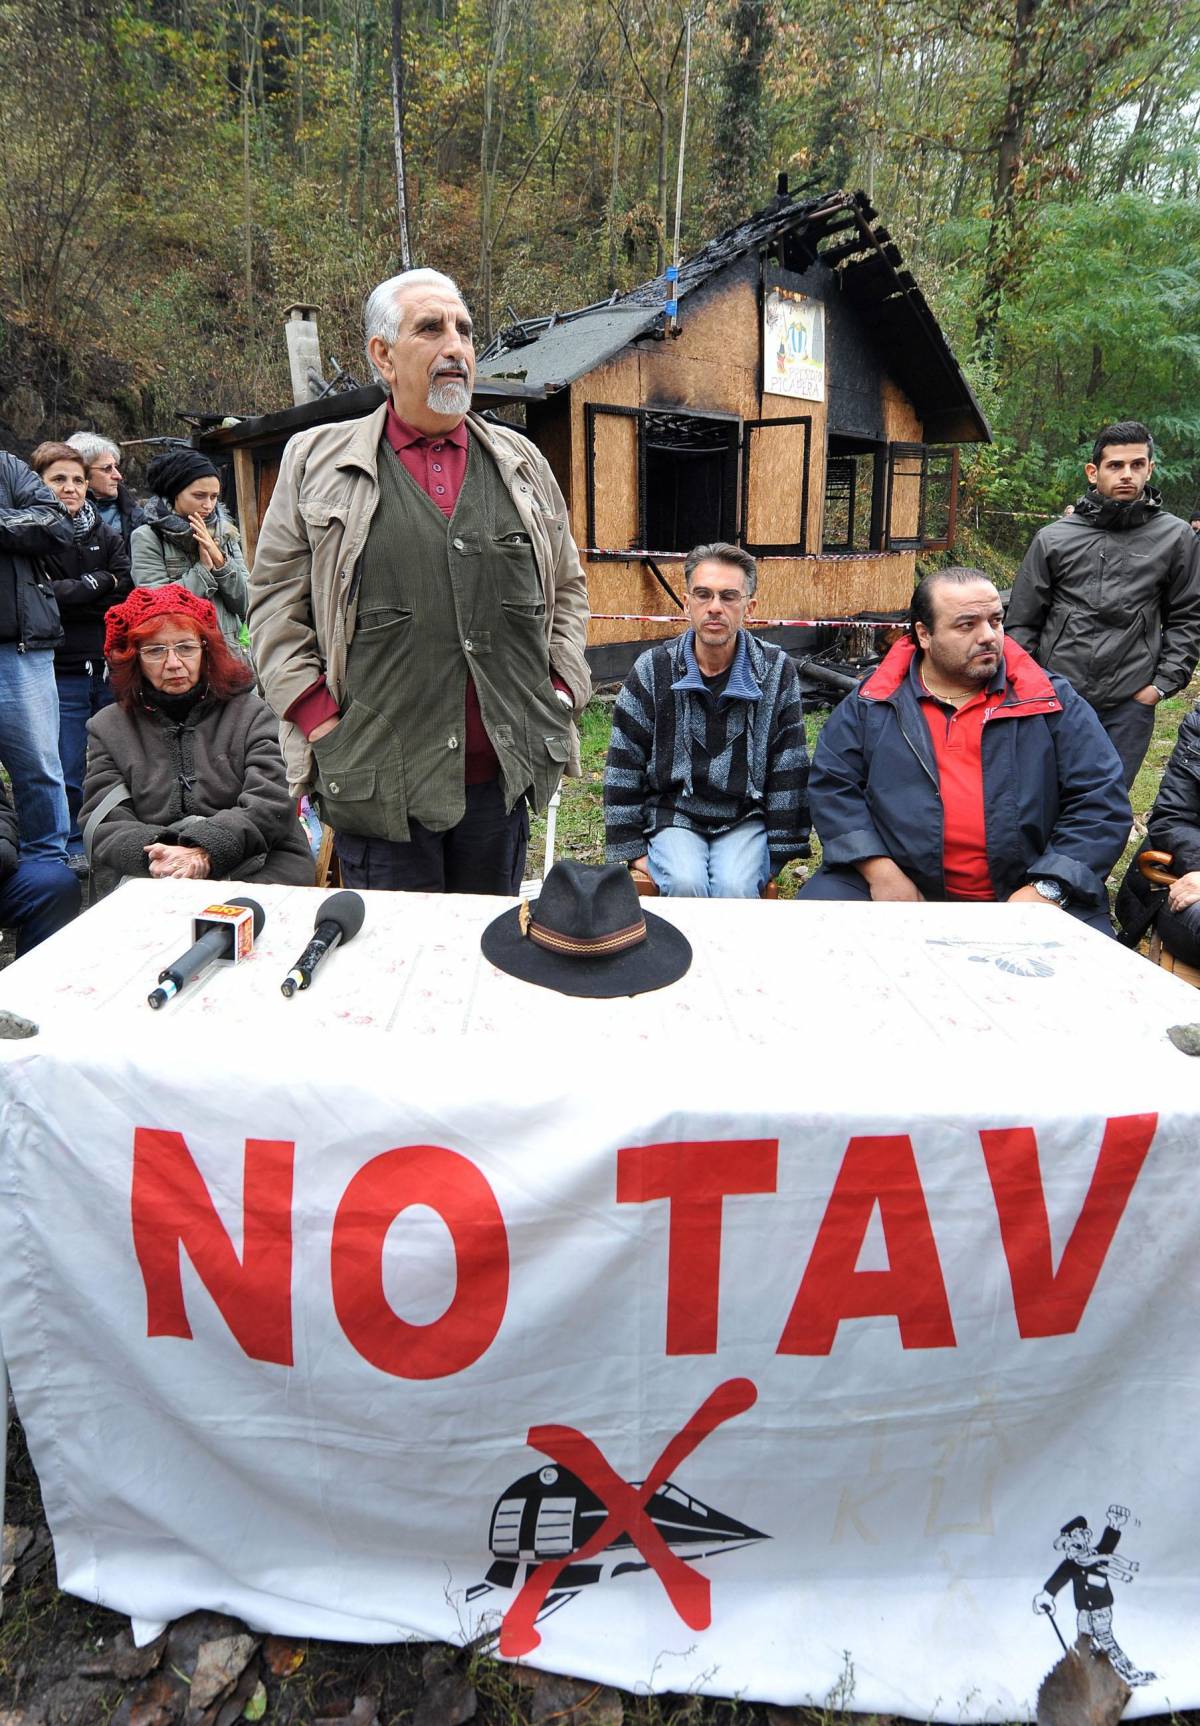 Il leader dei No Tav Perino: "Il sabotaggio? Tecnica non violenta" 